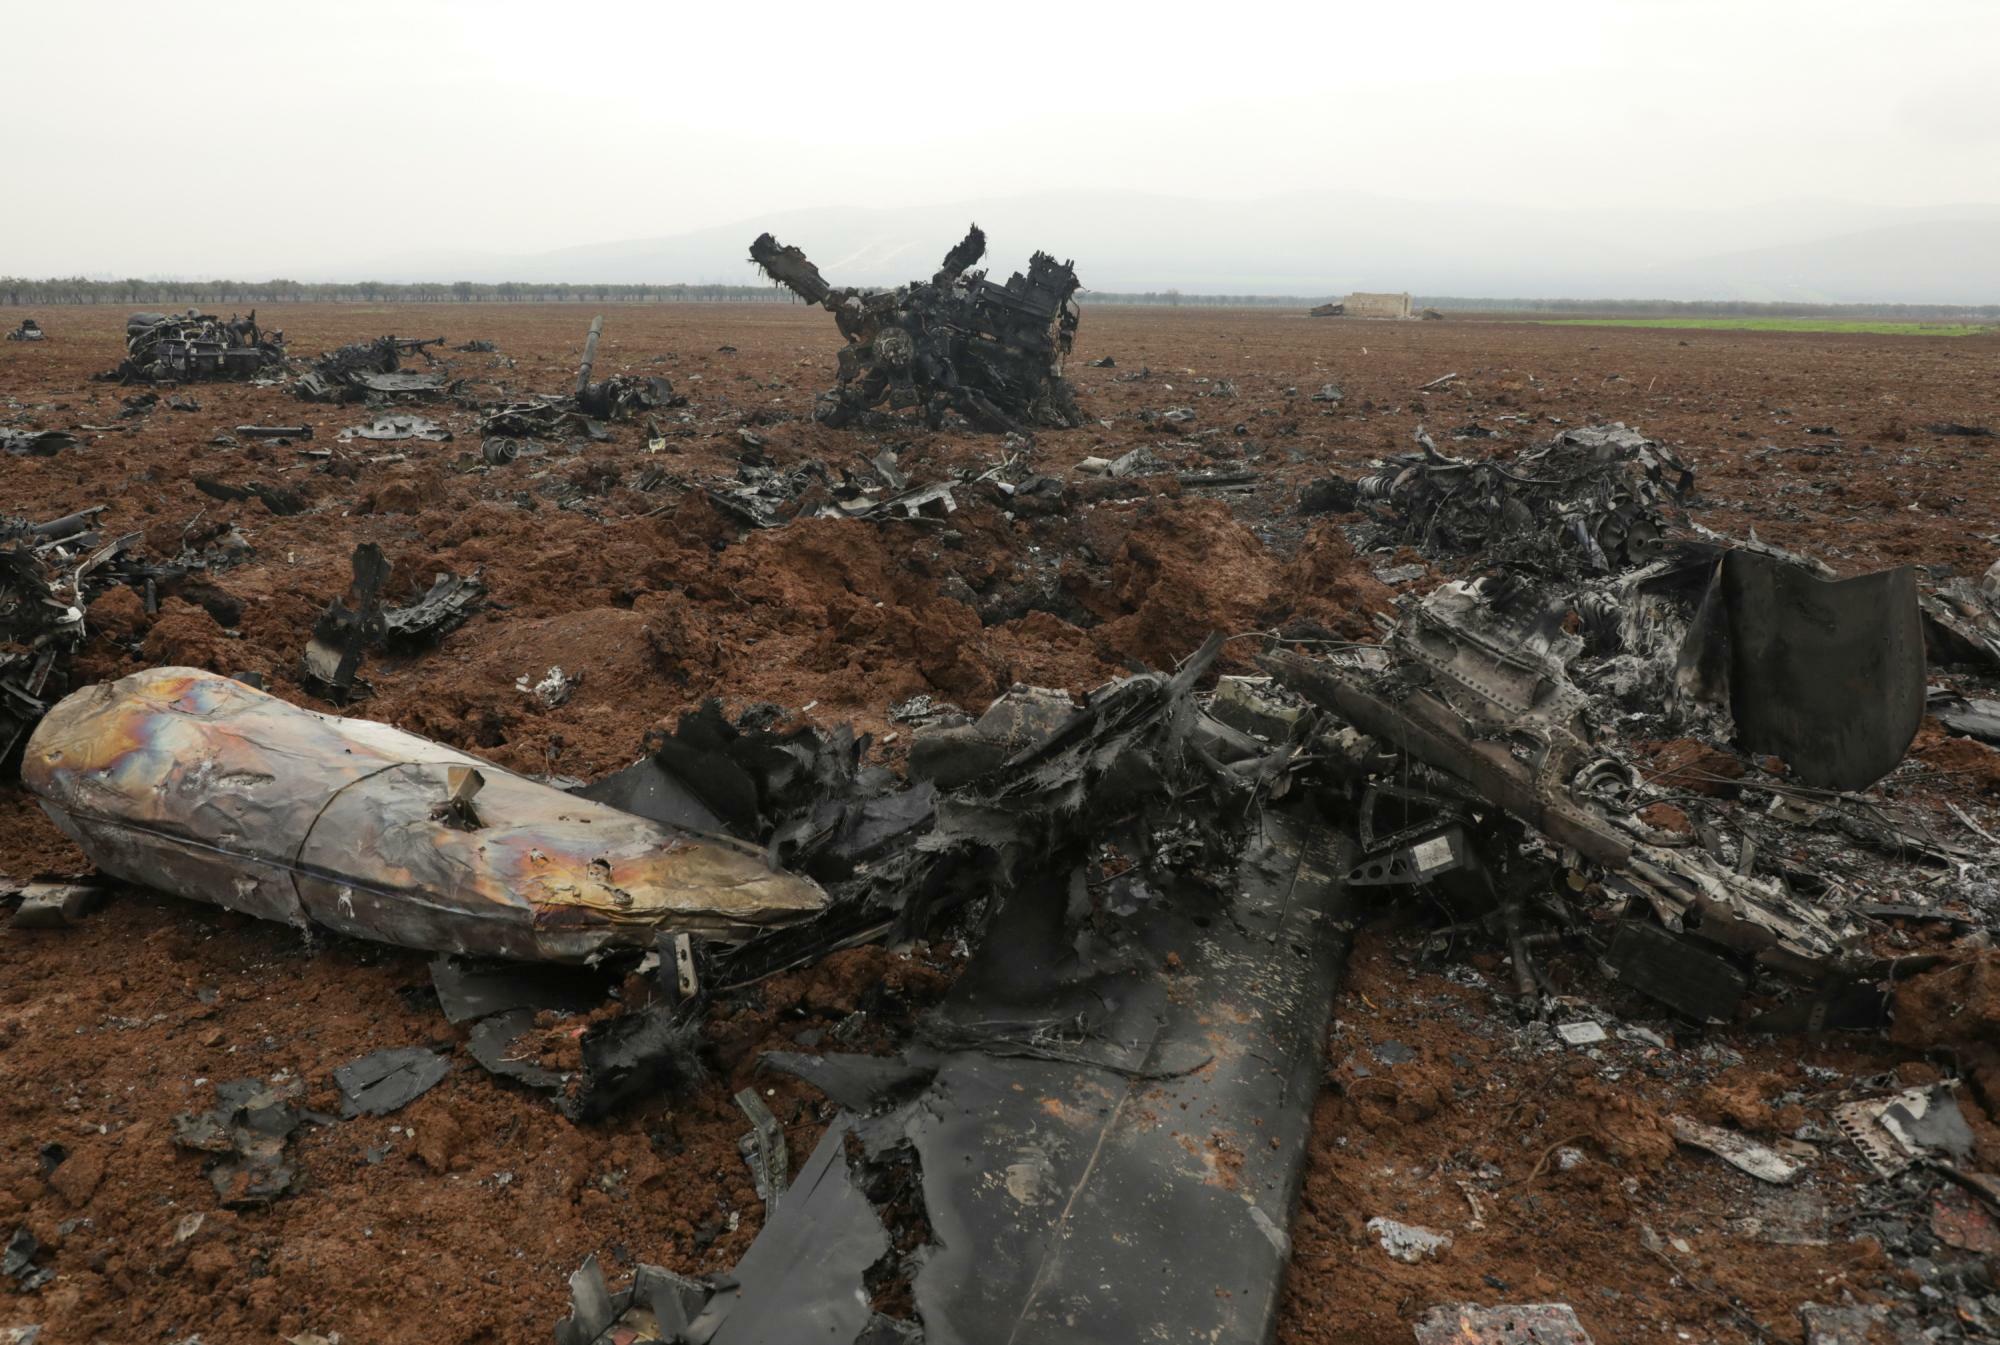 シリア北西部イドリブ近郊に墜落した米軍ヘリの残骸（2022.2.4）。米軍は2015年からシリア政府の承認を得ないままシリア国内でテロ対策の軍事作戦を行ってきた。